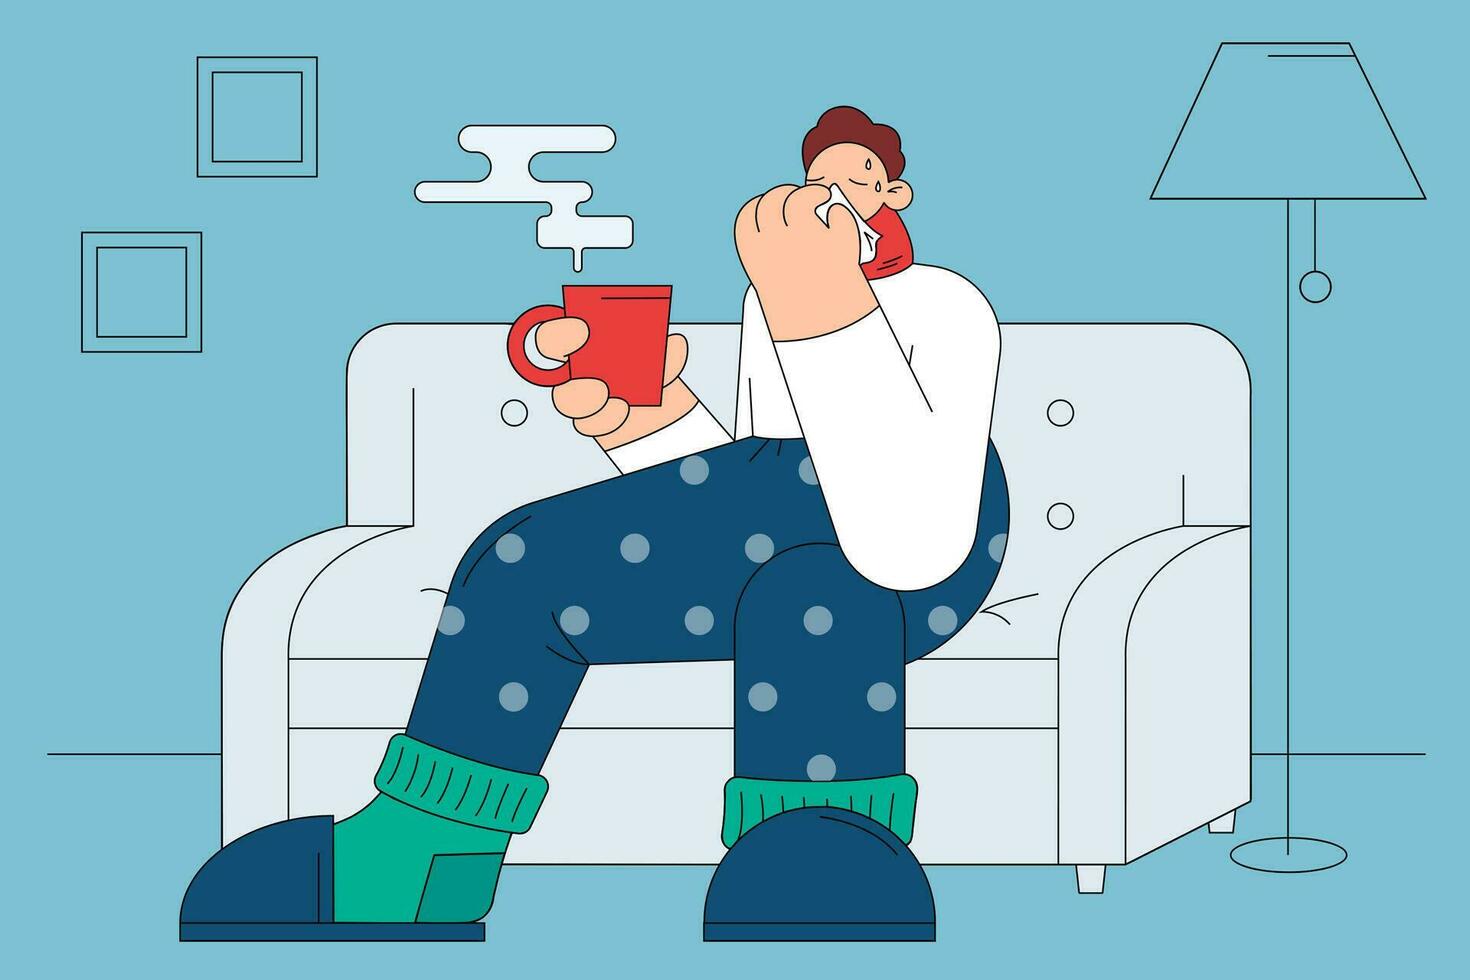 Grippe, Infektion, bekommen kalt Konzept. traurig krank Mann Karikatur Charakter im warm Socken Sweatshirt und Schal Sitzung auf Sofa mit heiß trinken, Niesen und Gefühl krank haben Fieber Vektor Illustration